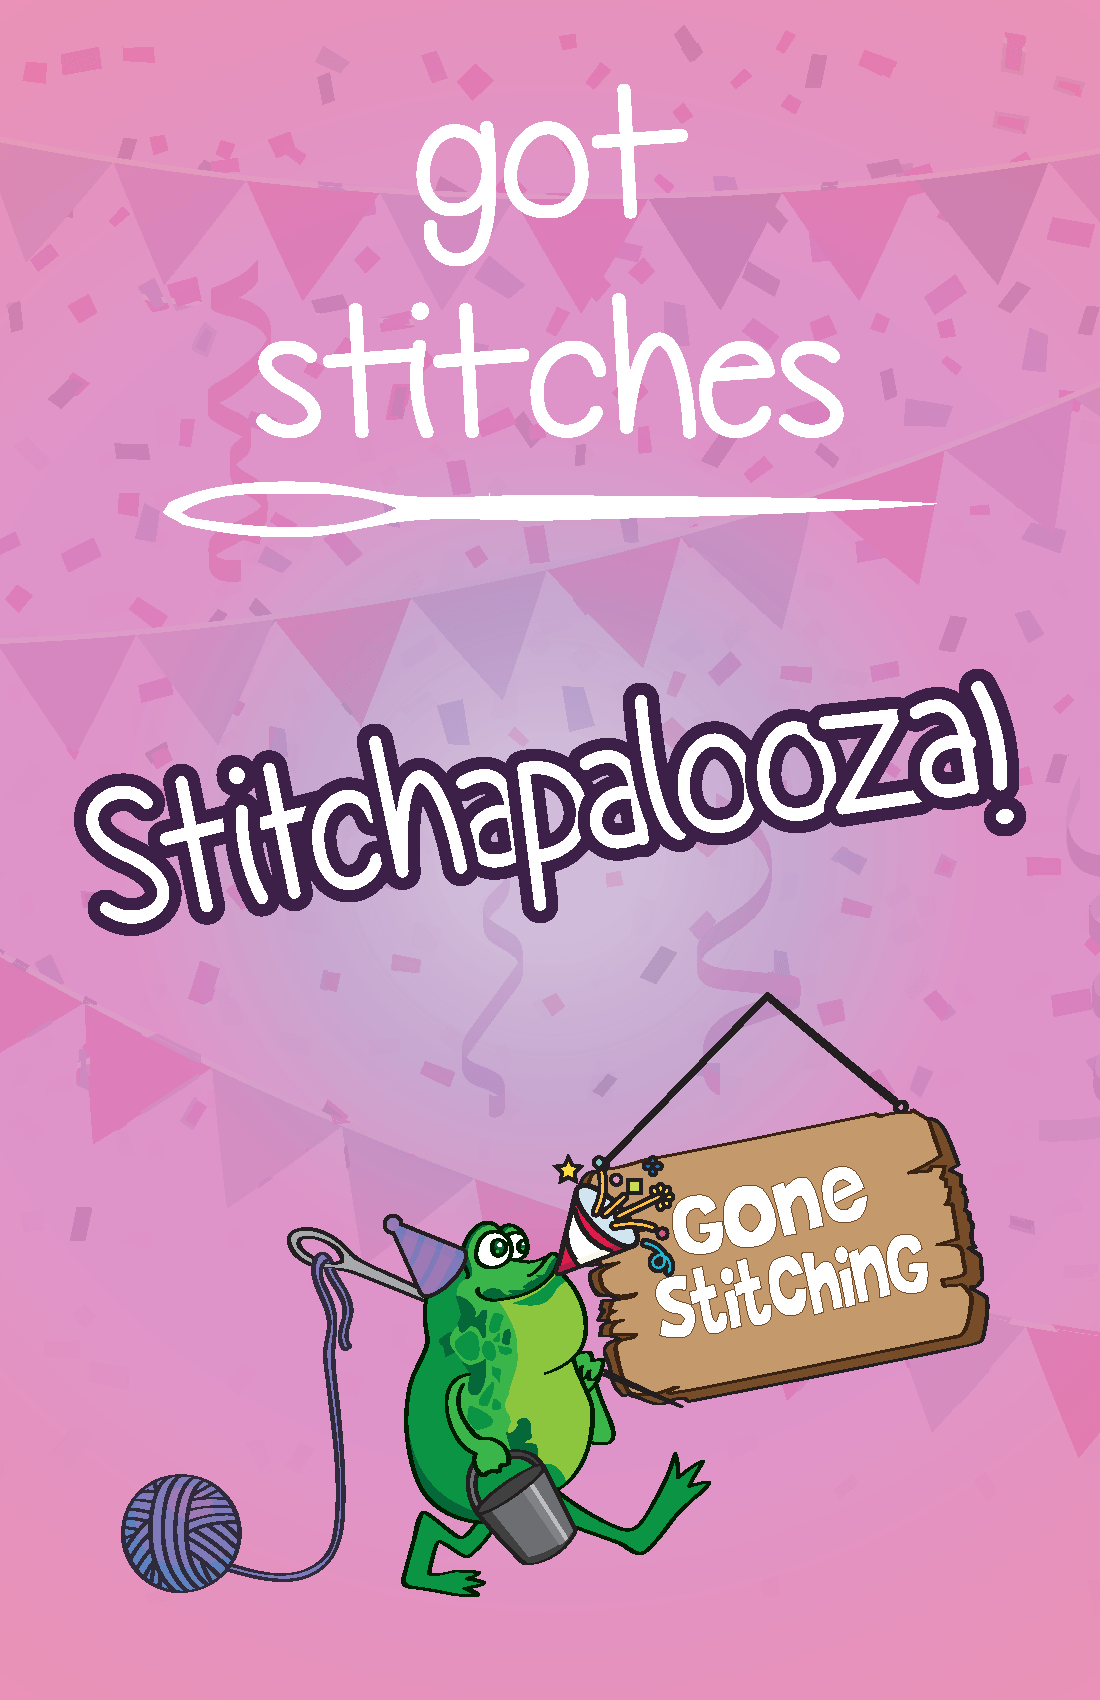 Gone Stitches Stitchapalooza